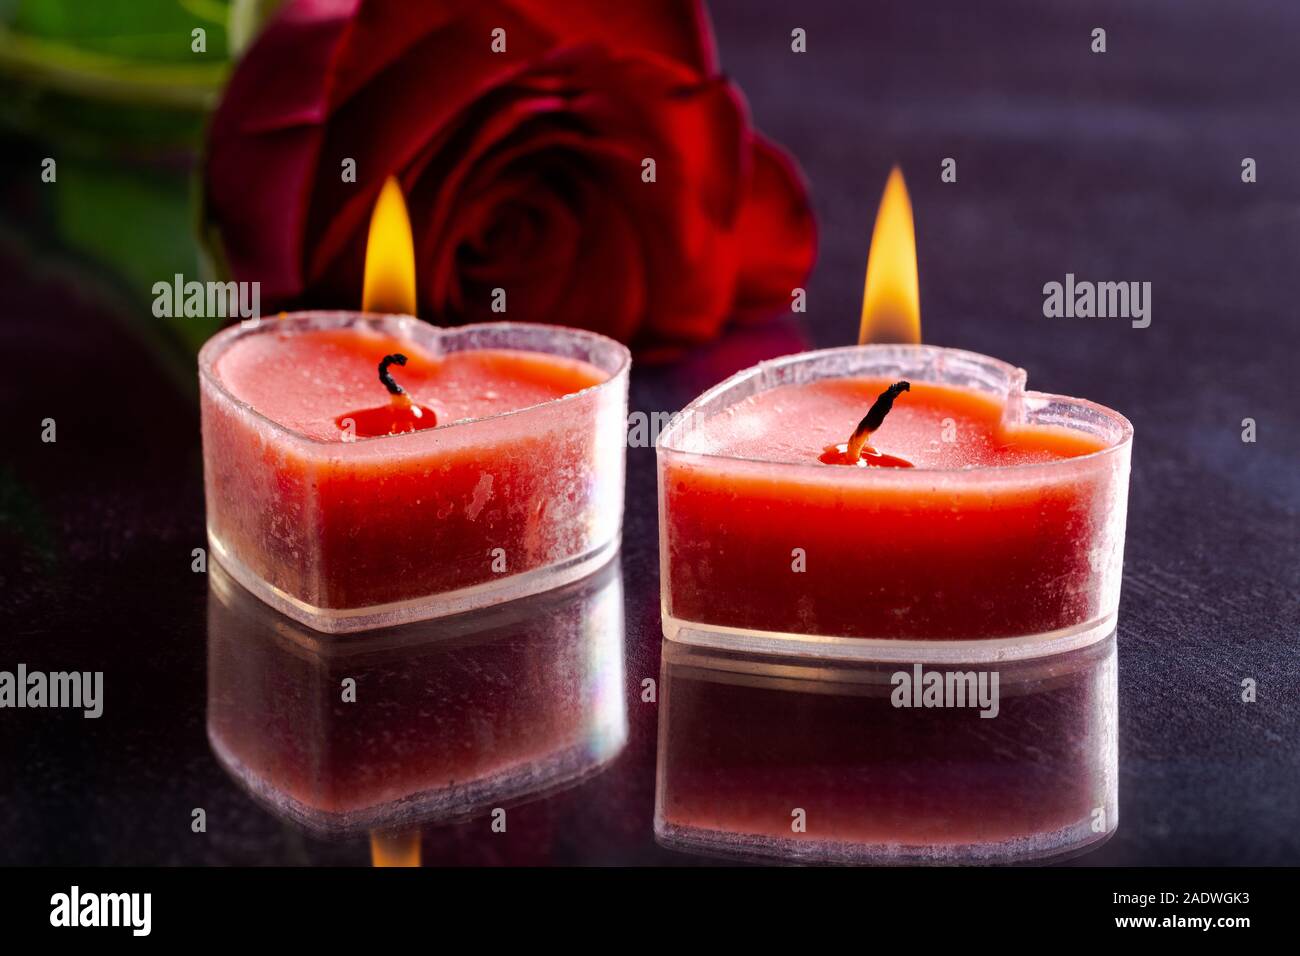 Primo piano di due cuore ardente di san Valentino a forma di candele con una rosa rossa in background su un tavolo scuro Foto Stock